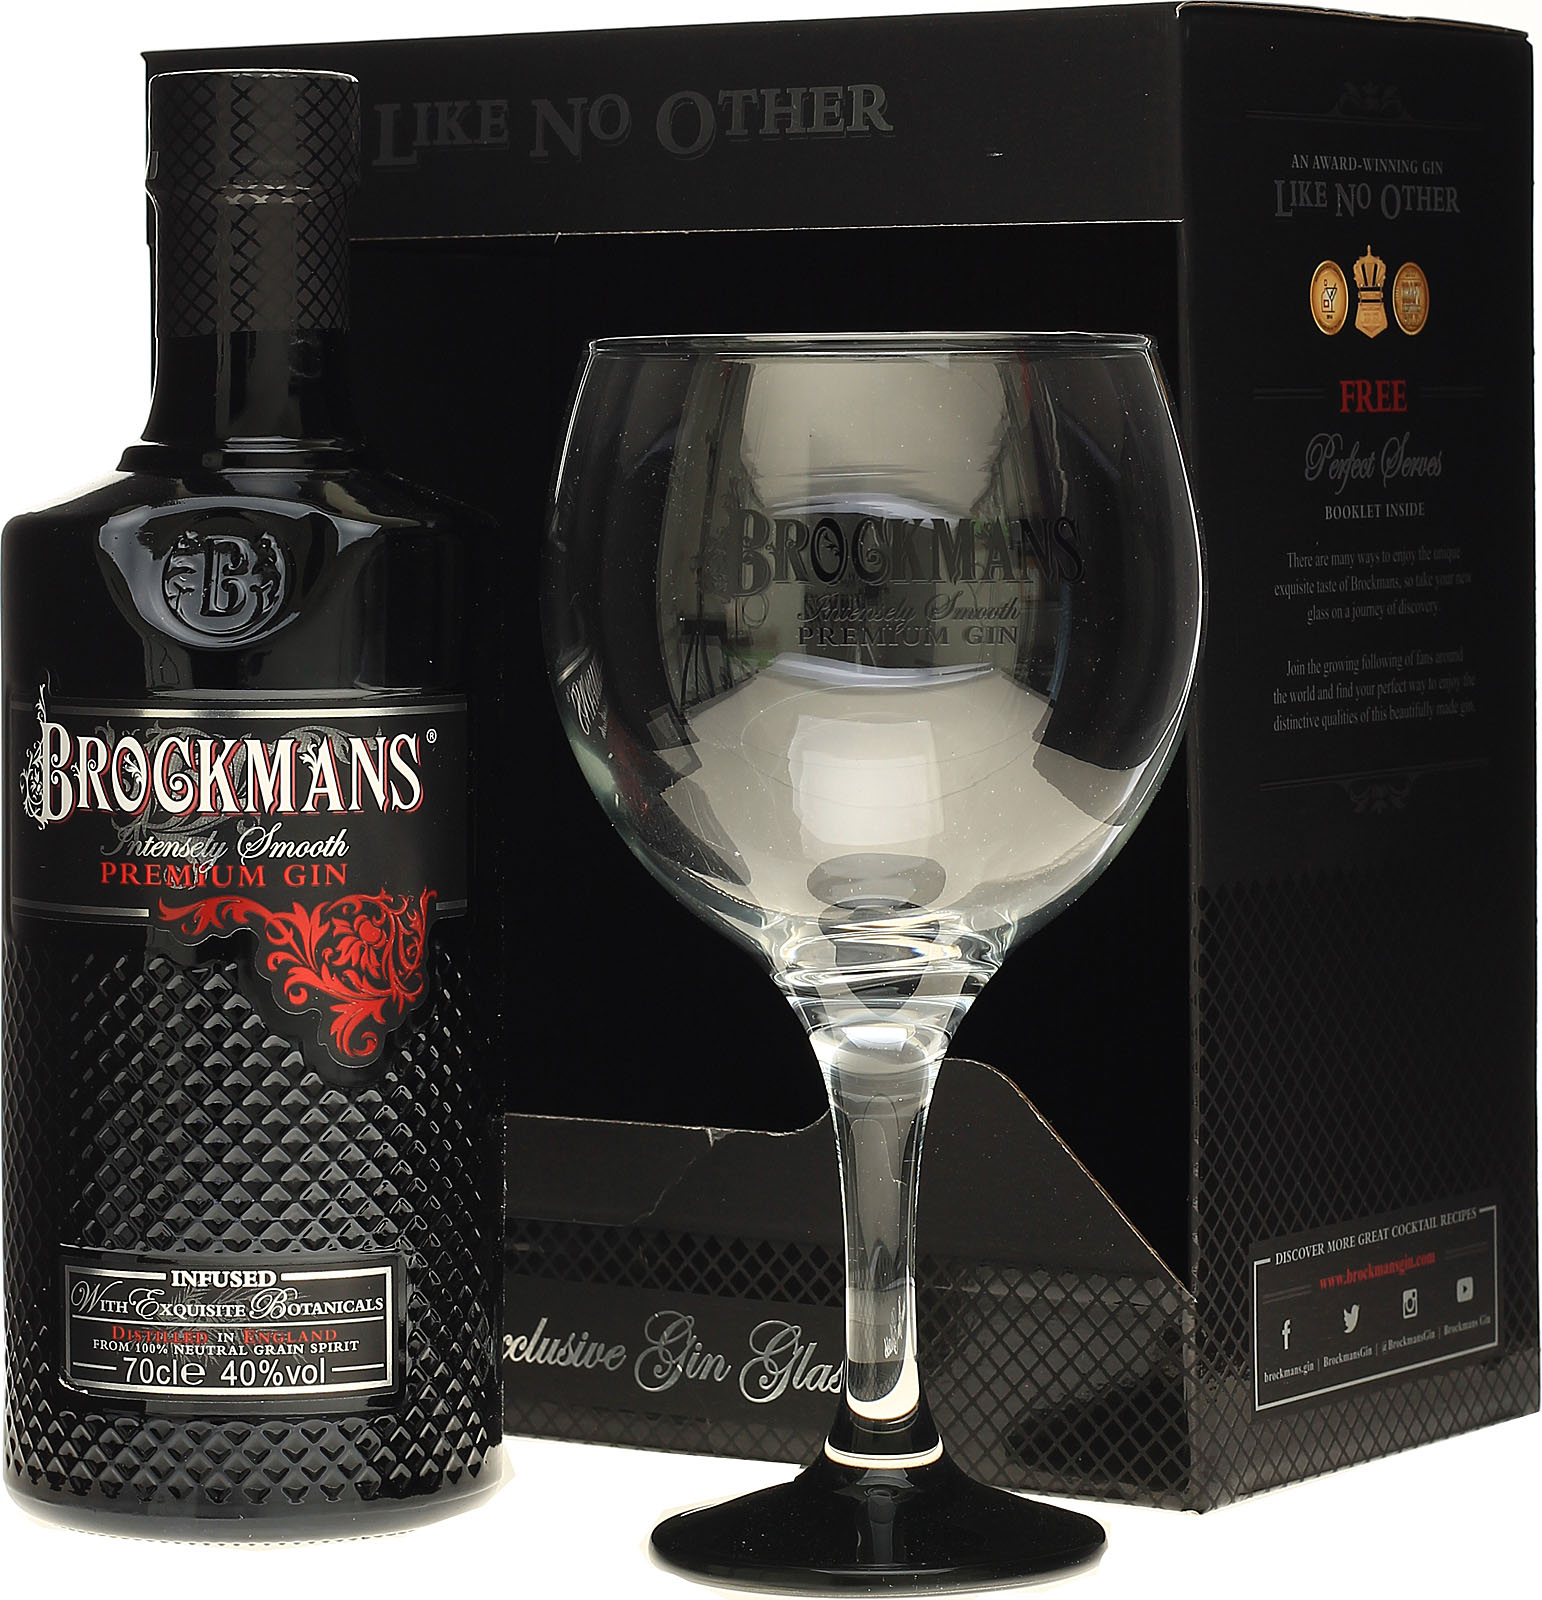 Brockmans Intensely Smooth Geschenkset, Premium-Gin Gin